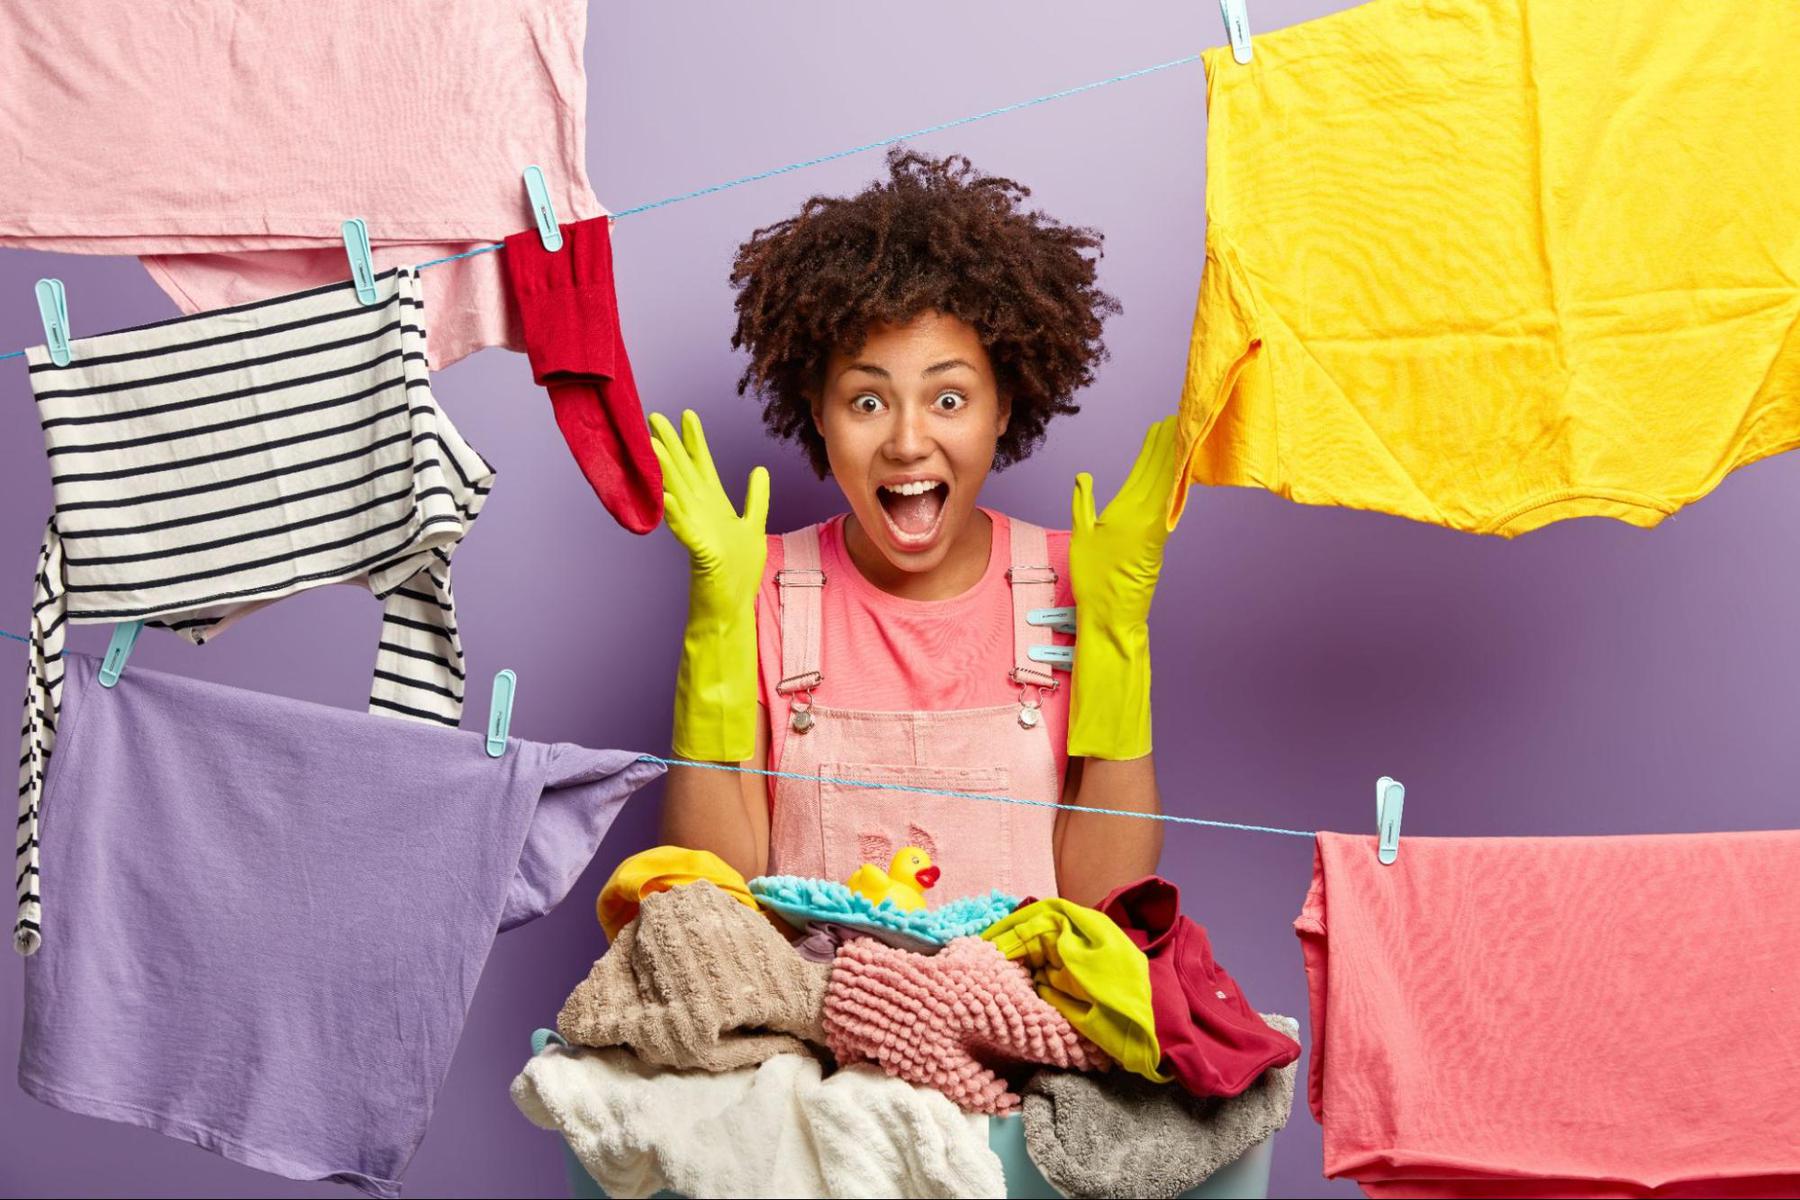 Apartamento pequeno: truques para secar suas roupas mais rápido - Freepik